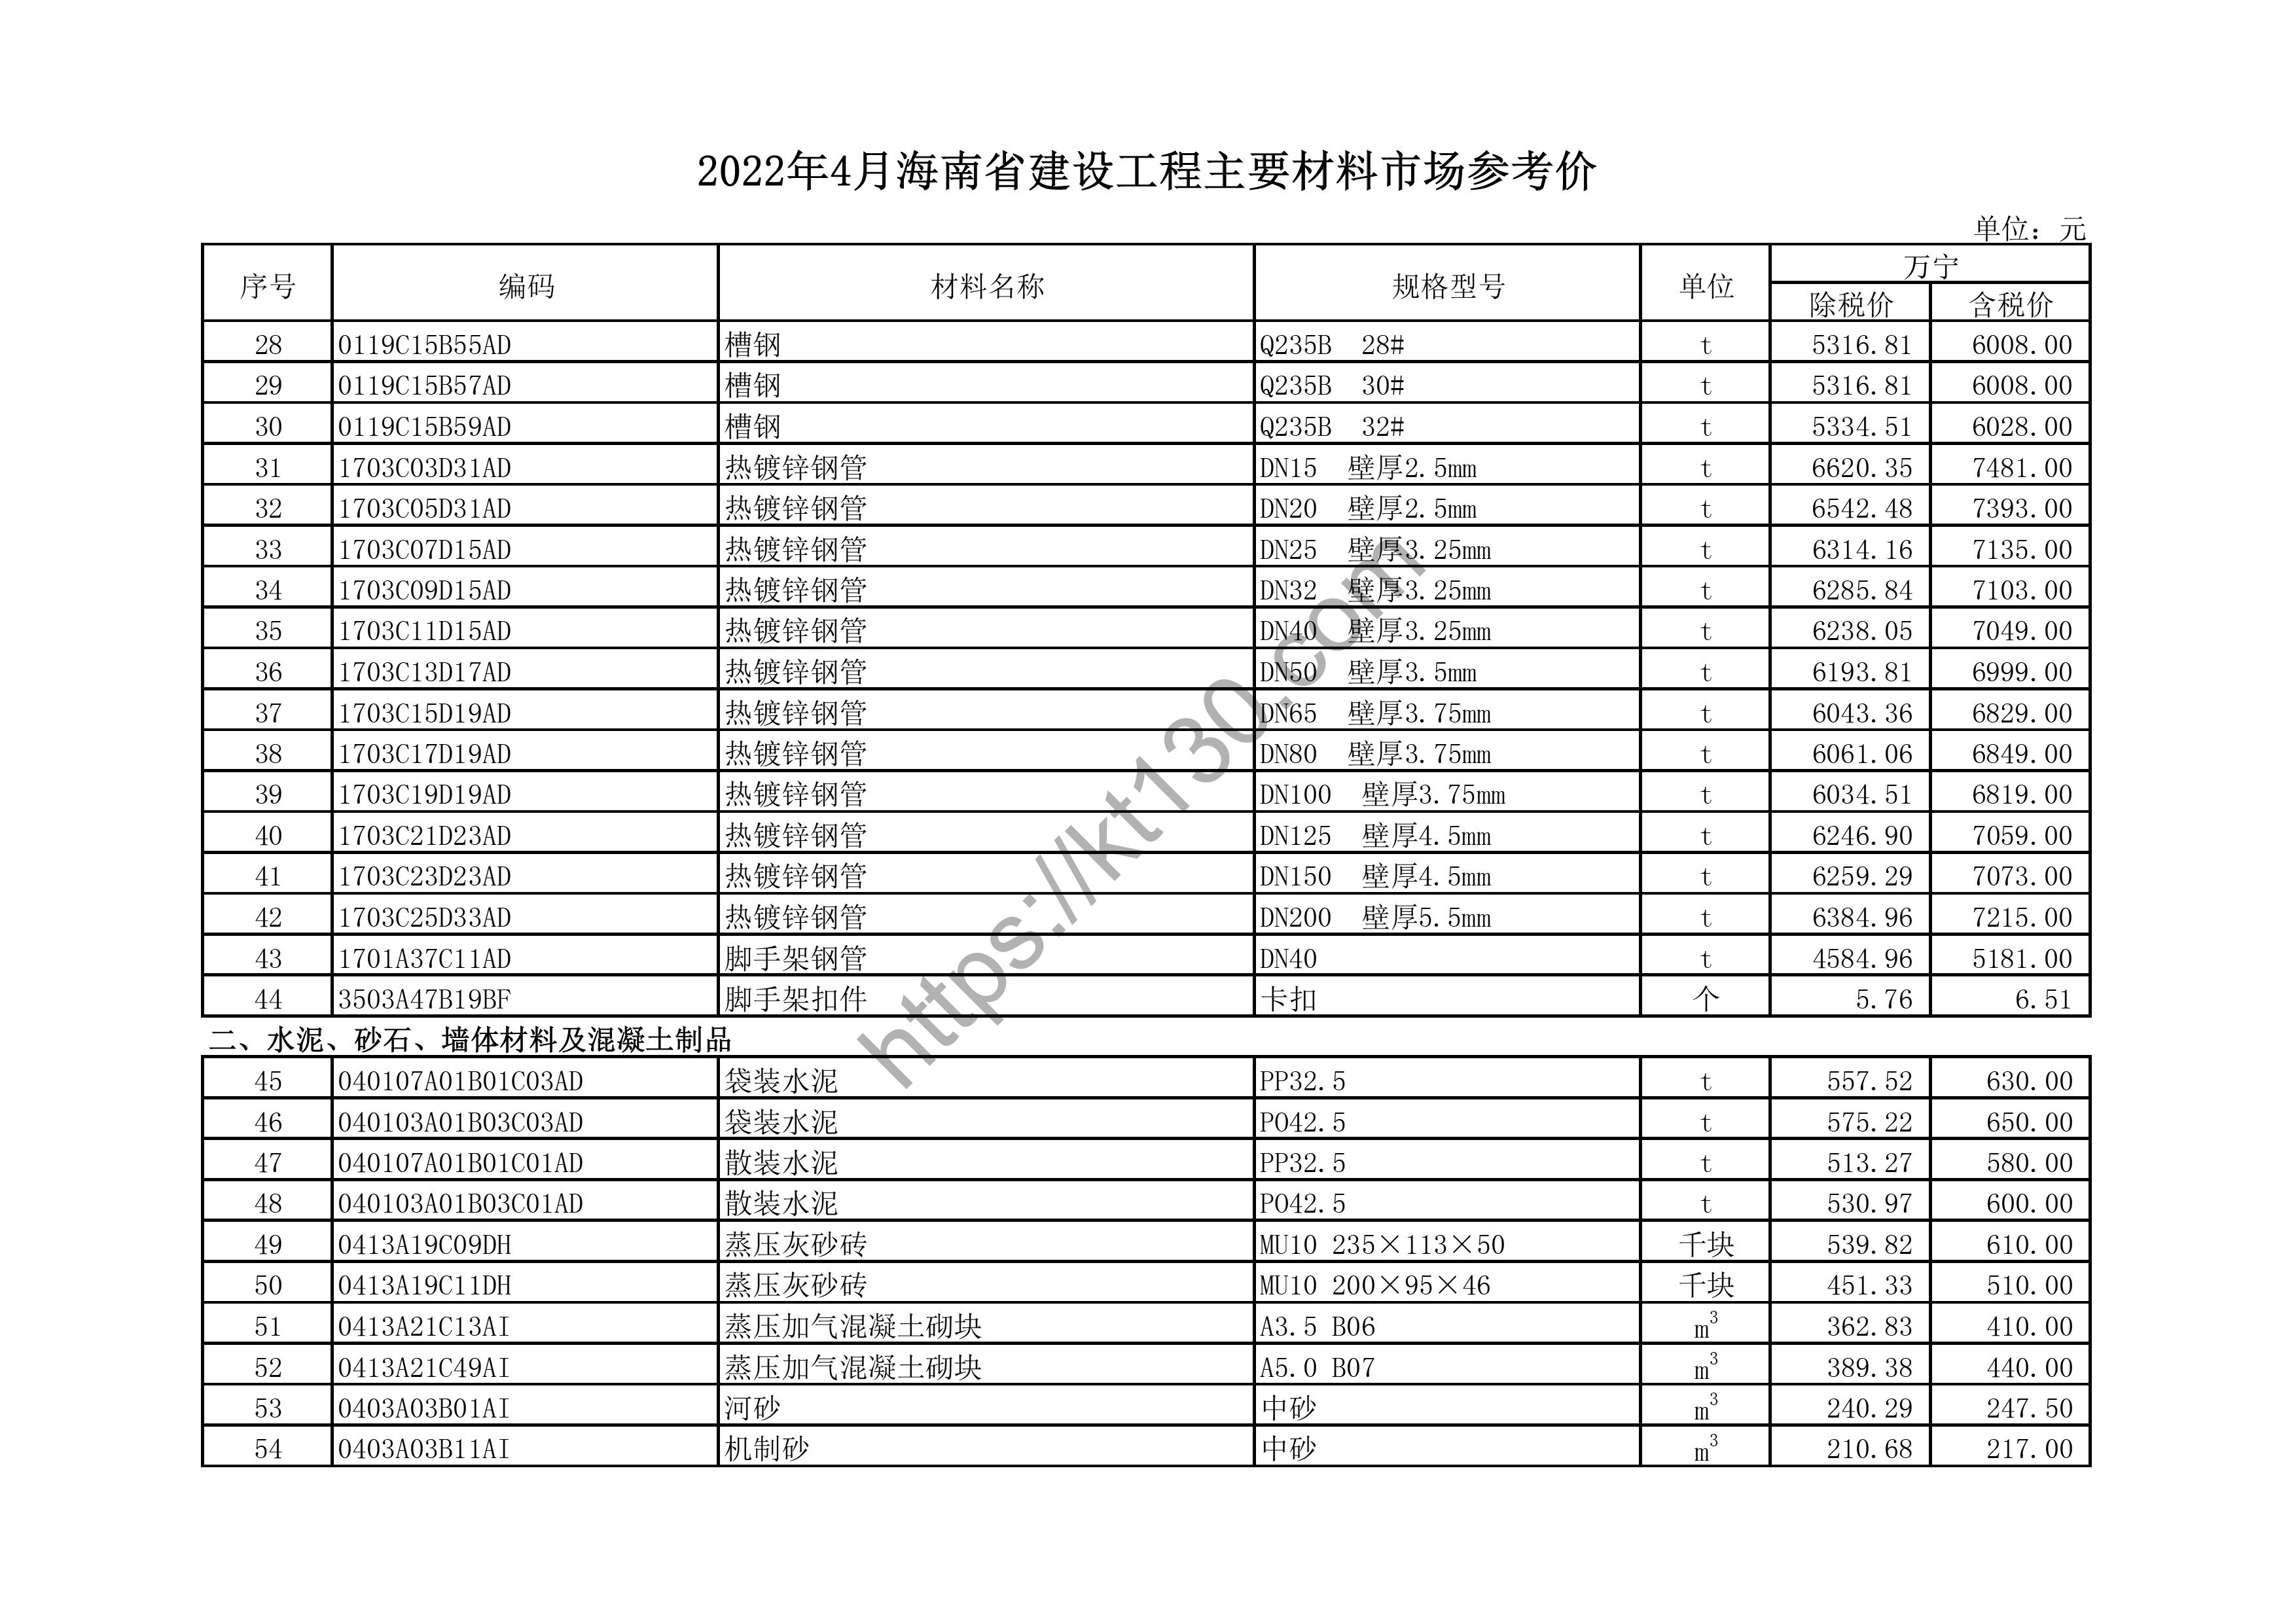 海南省2022年4月建筑材料价_pp-r给水管_44162